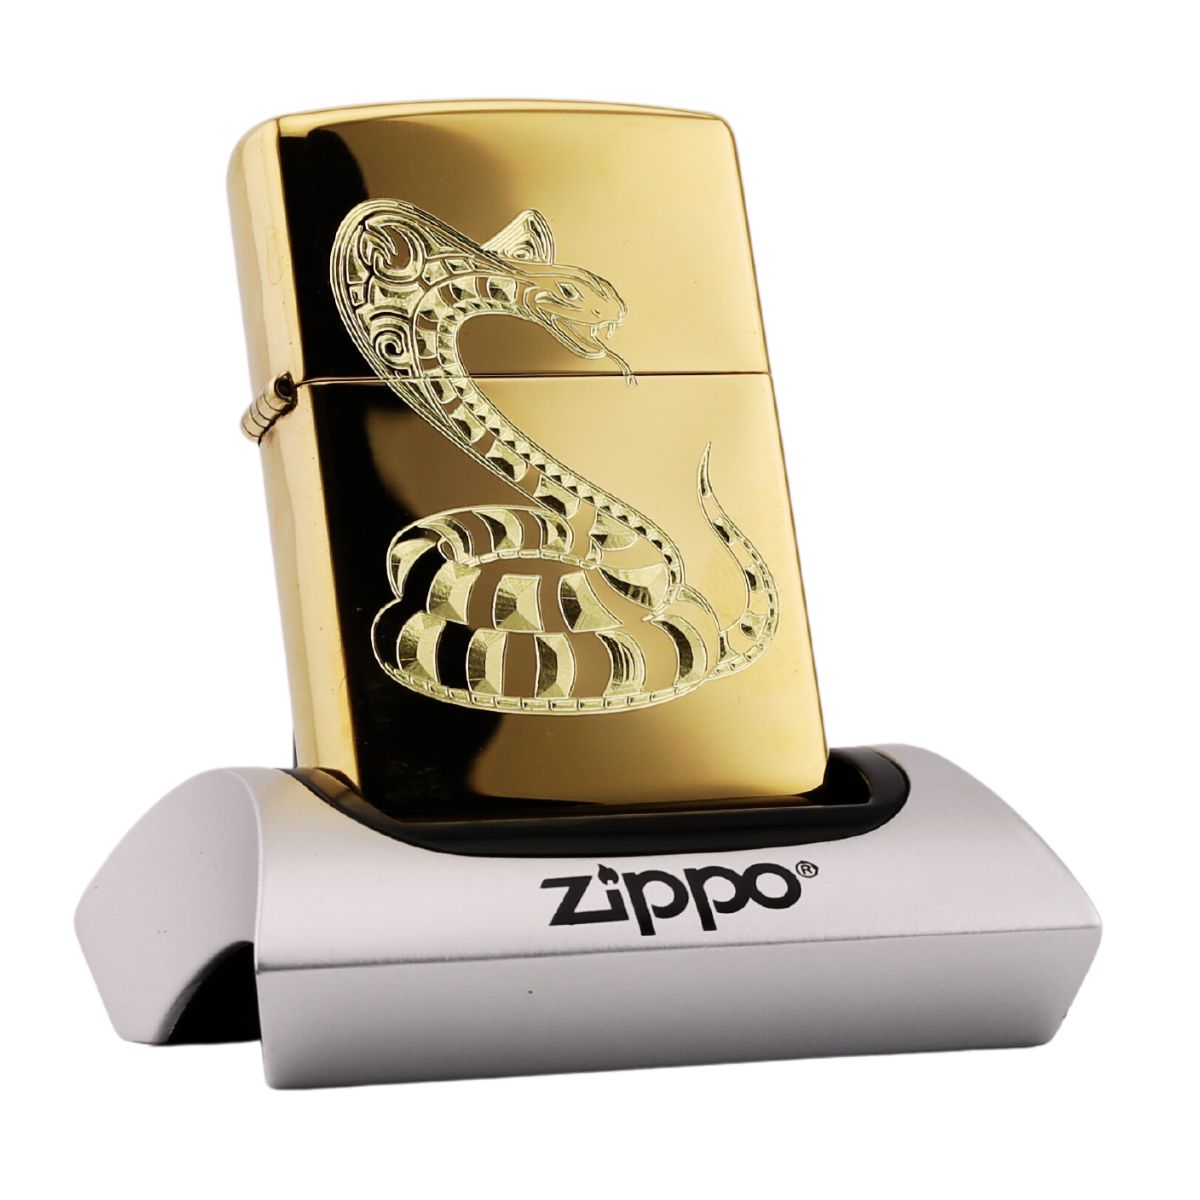 Zippo Khắc Cao Cấp Tuổi Tỵ độc quyền zippo store vn